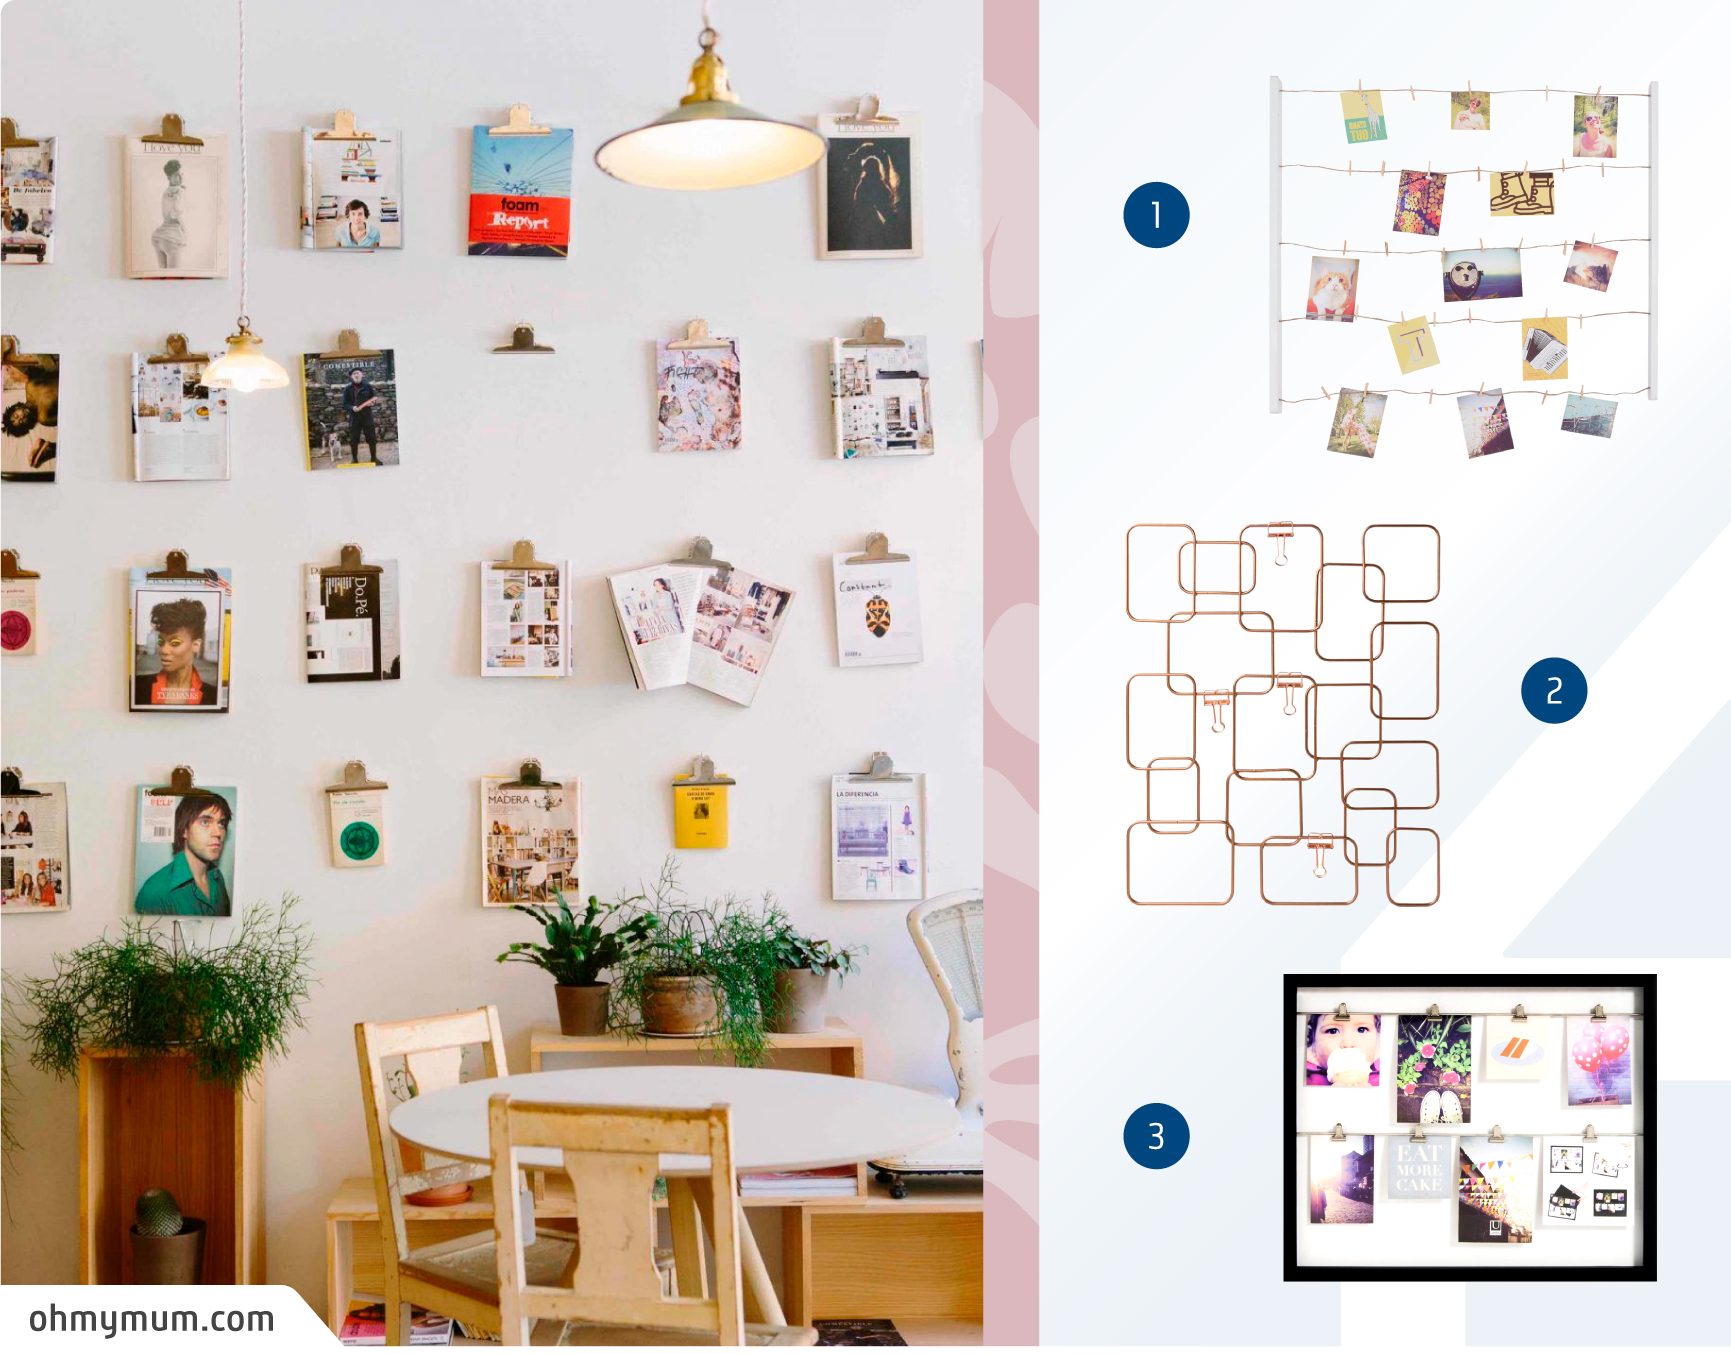 Moodboard de productos para colgar fotos de forma original disponibles en Sodimac junto a una foto de un comedor con un muro galería con páginas de revistas y fotos colgados por ganchos de metal.